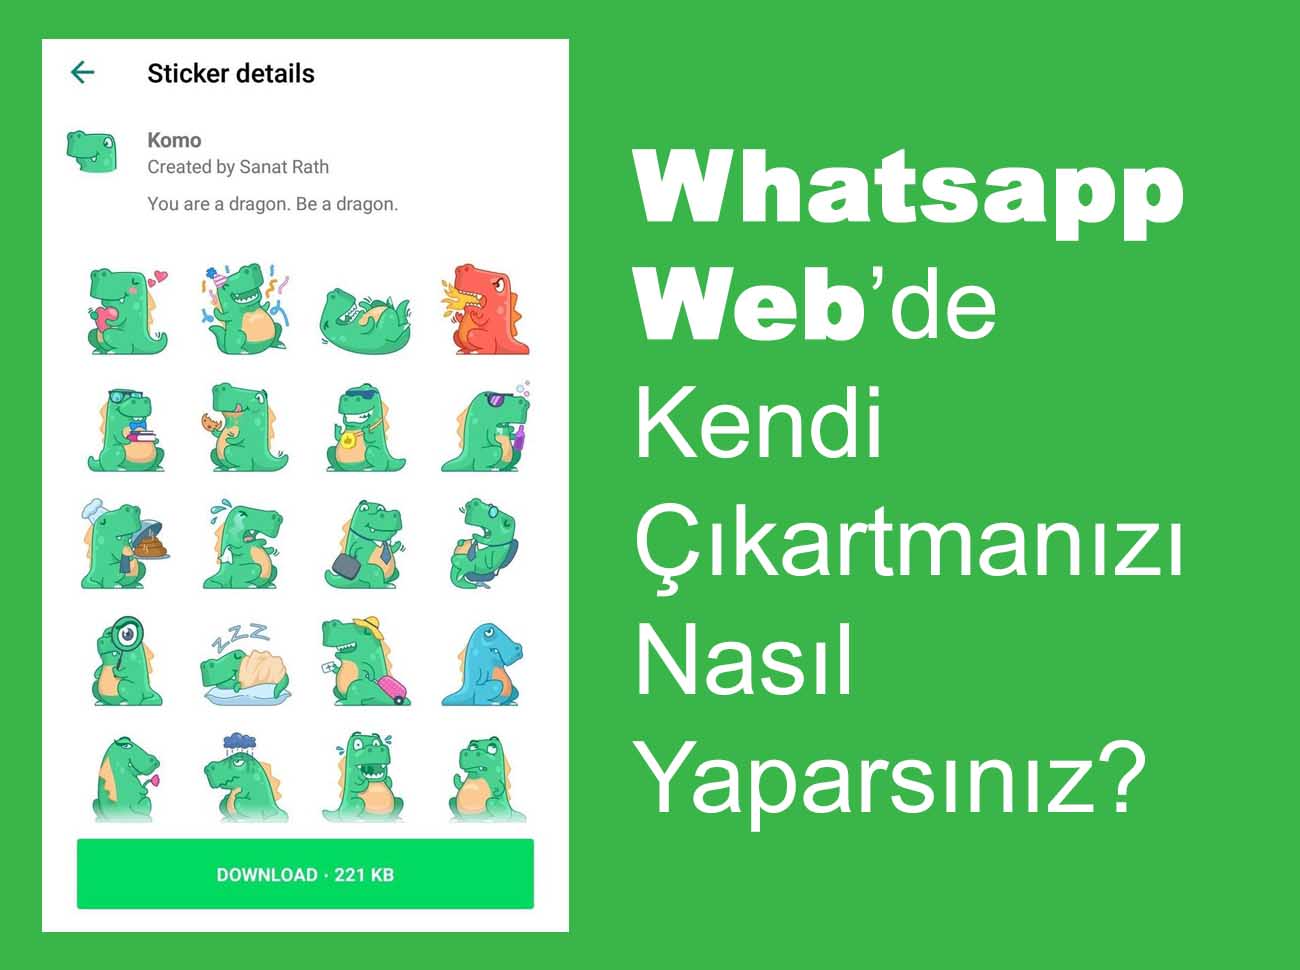 Whatsapp Web’de Kendi Çıkartmanızı Yapabilirsiniz